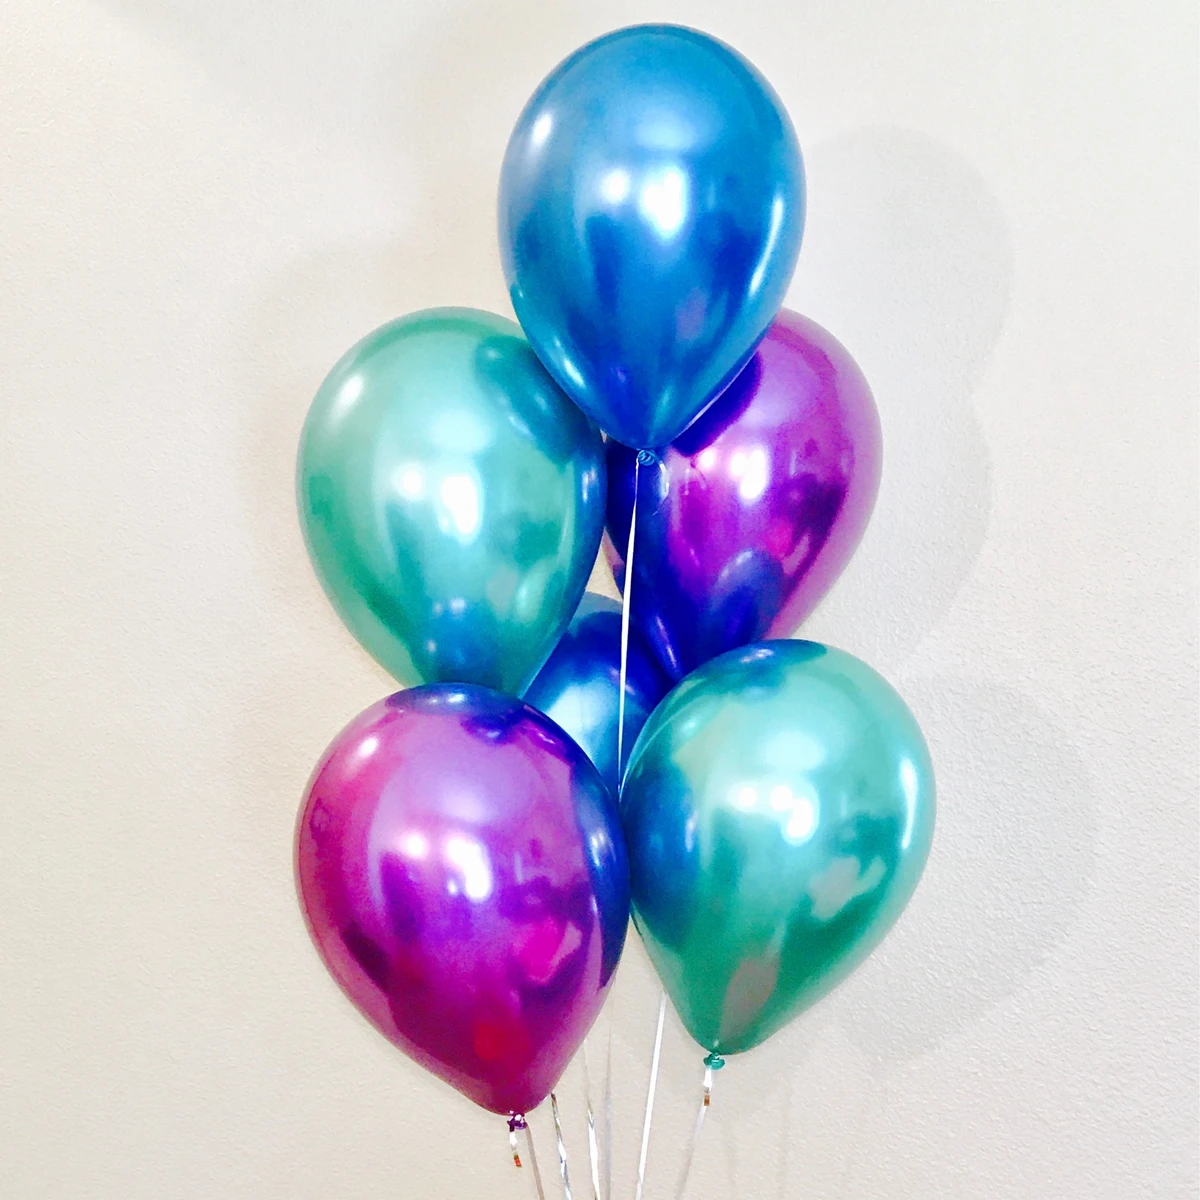 QIFU 10 шт Металлические воздушные шары Свадебные украшения с днем рождения воздушные шары латексные металлические хромированные шары Гелиевый шар Красочные